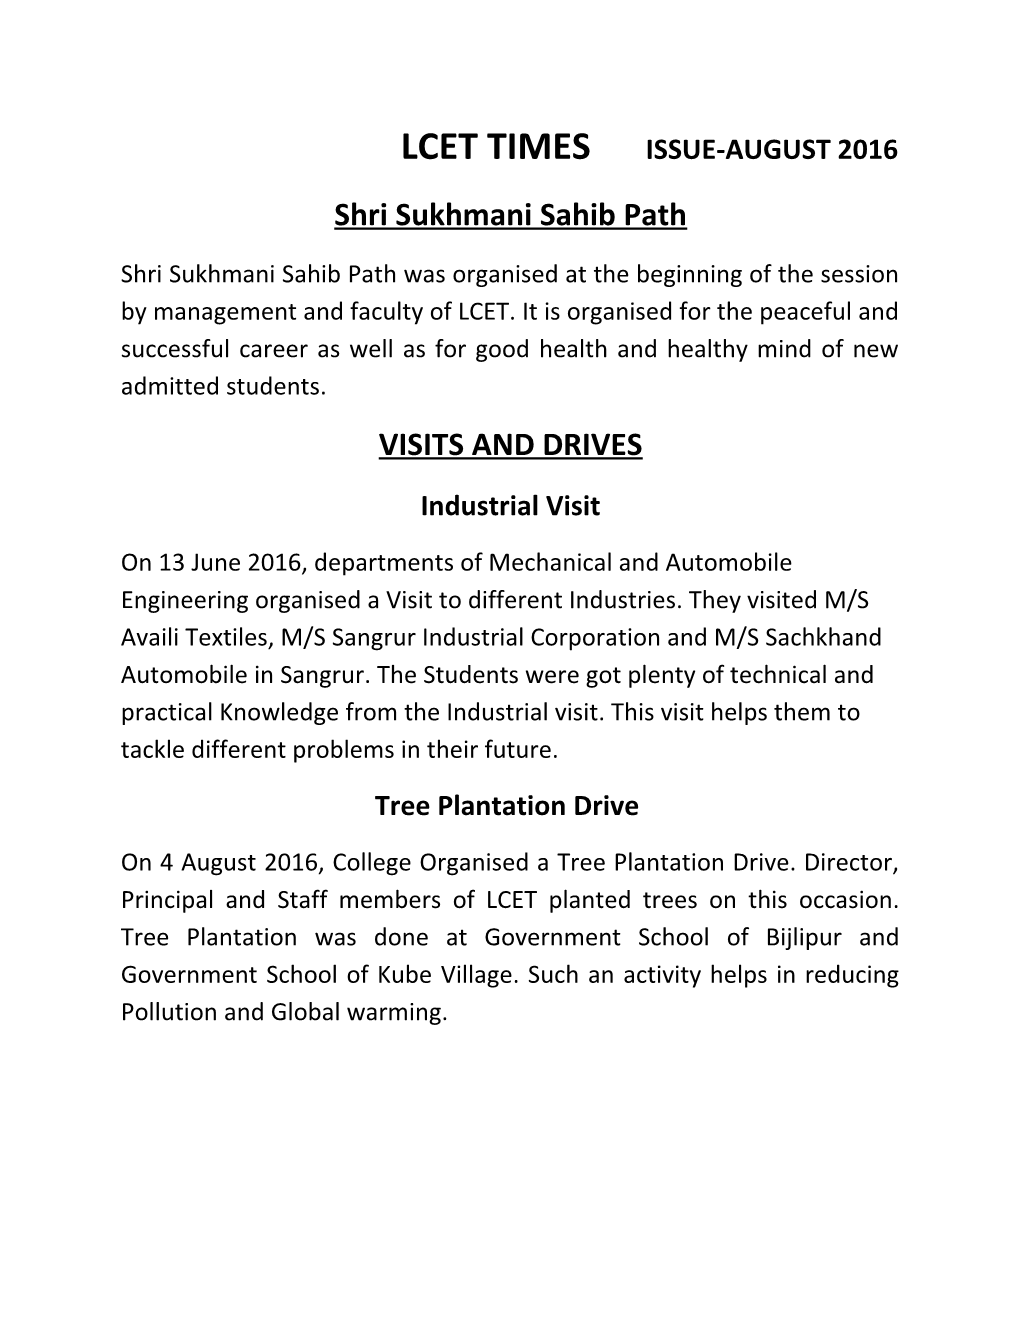 Shri Sukhmani Sahib Path